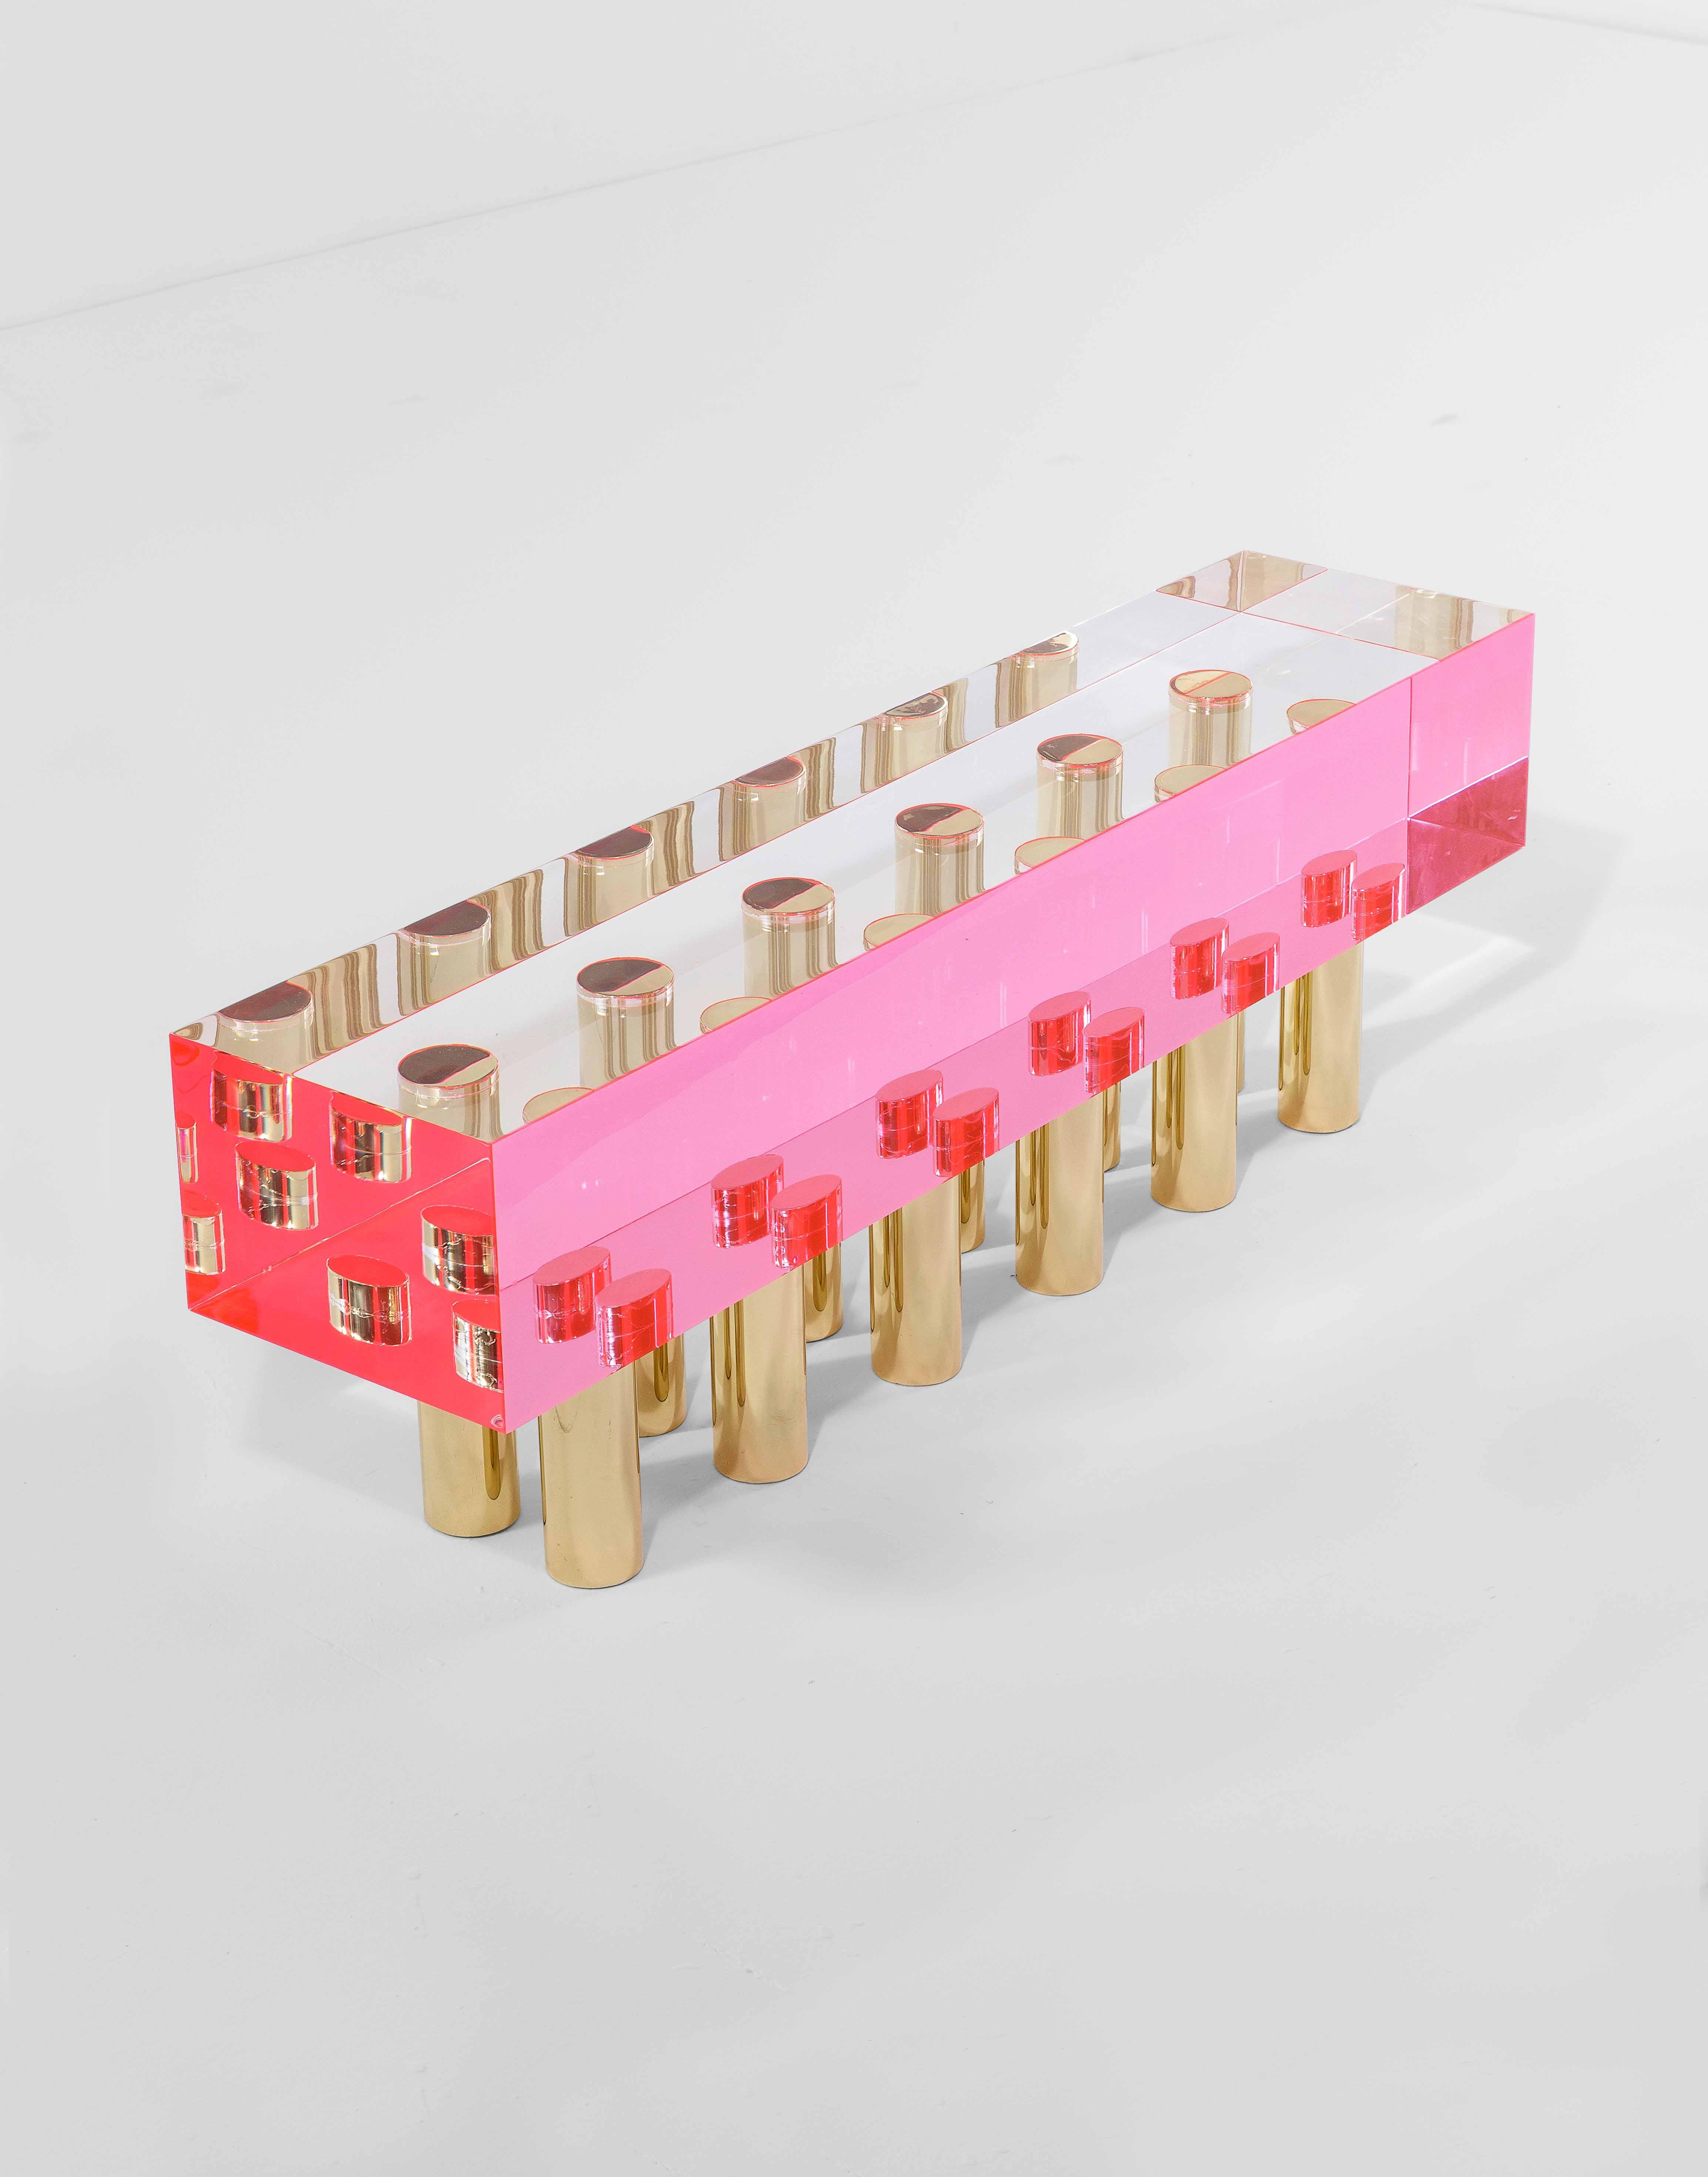 Une belle banquette ou table basse en plexiglas transparent de couleur rose et avec dix pieds en laiton conçue par Studio Superego pour les éditions Superego, en 2018. 

Biographie :
Les éditions Superego sont nées en 2006, menant une activité